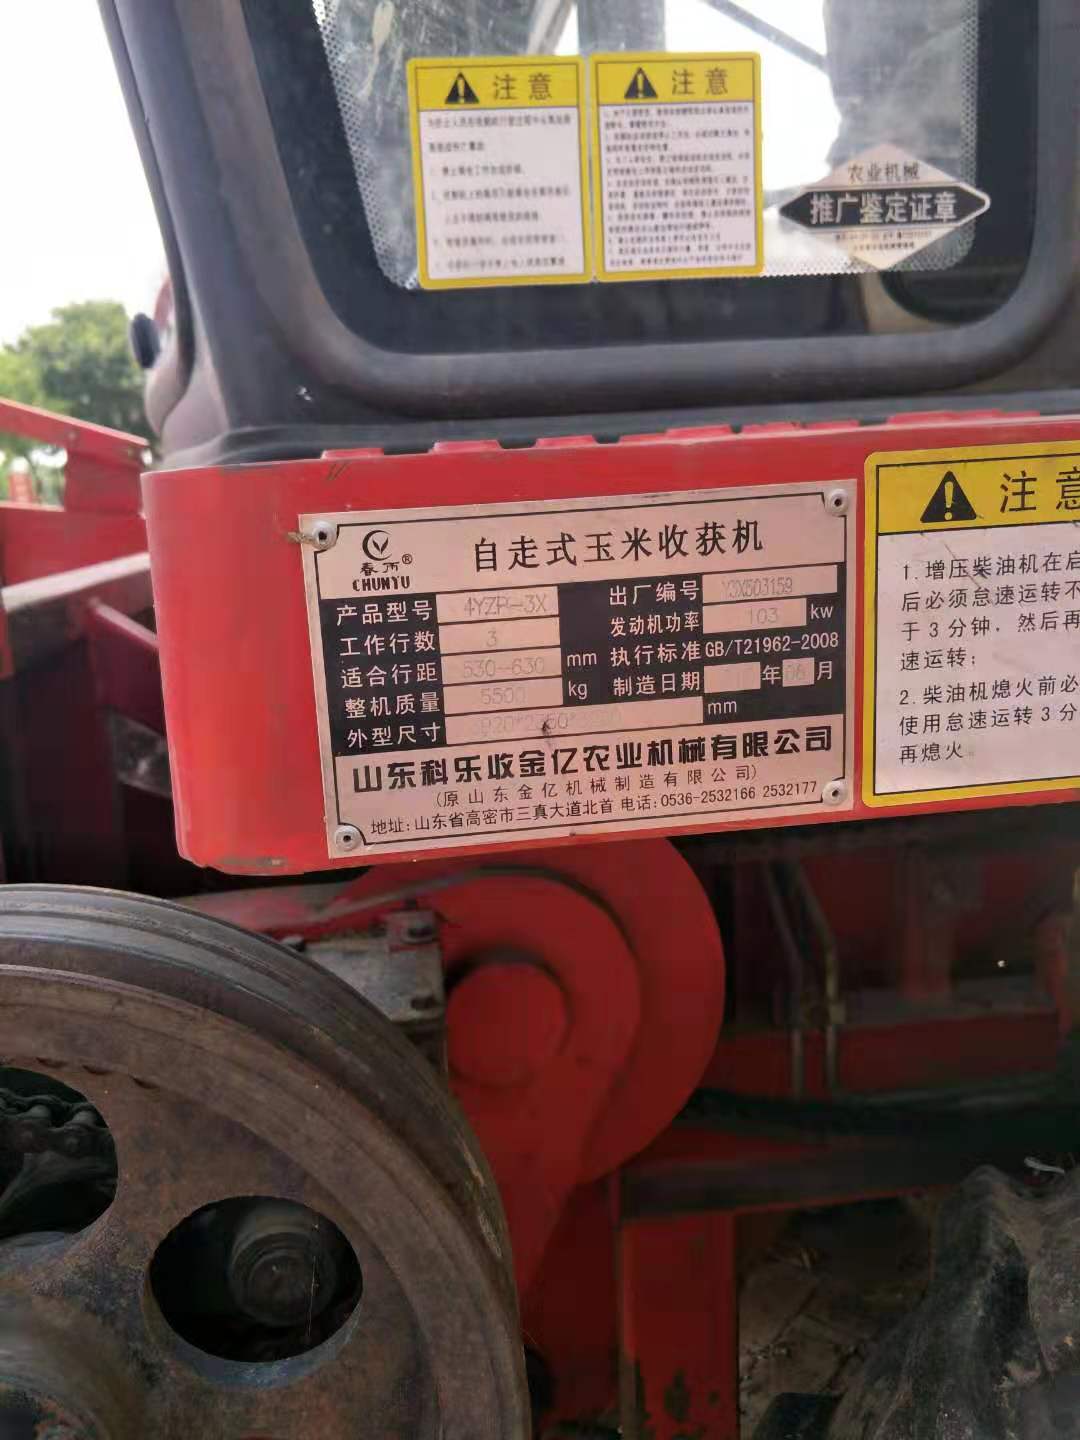 【衡水】春雨牌自走式玉米收割机 价格5.00万 二手车